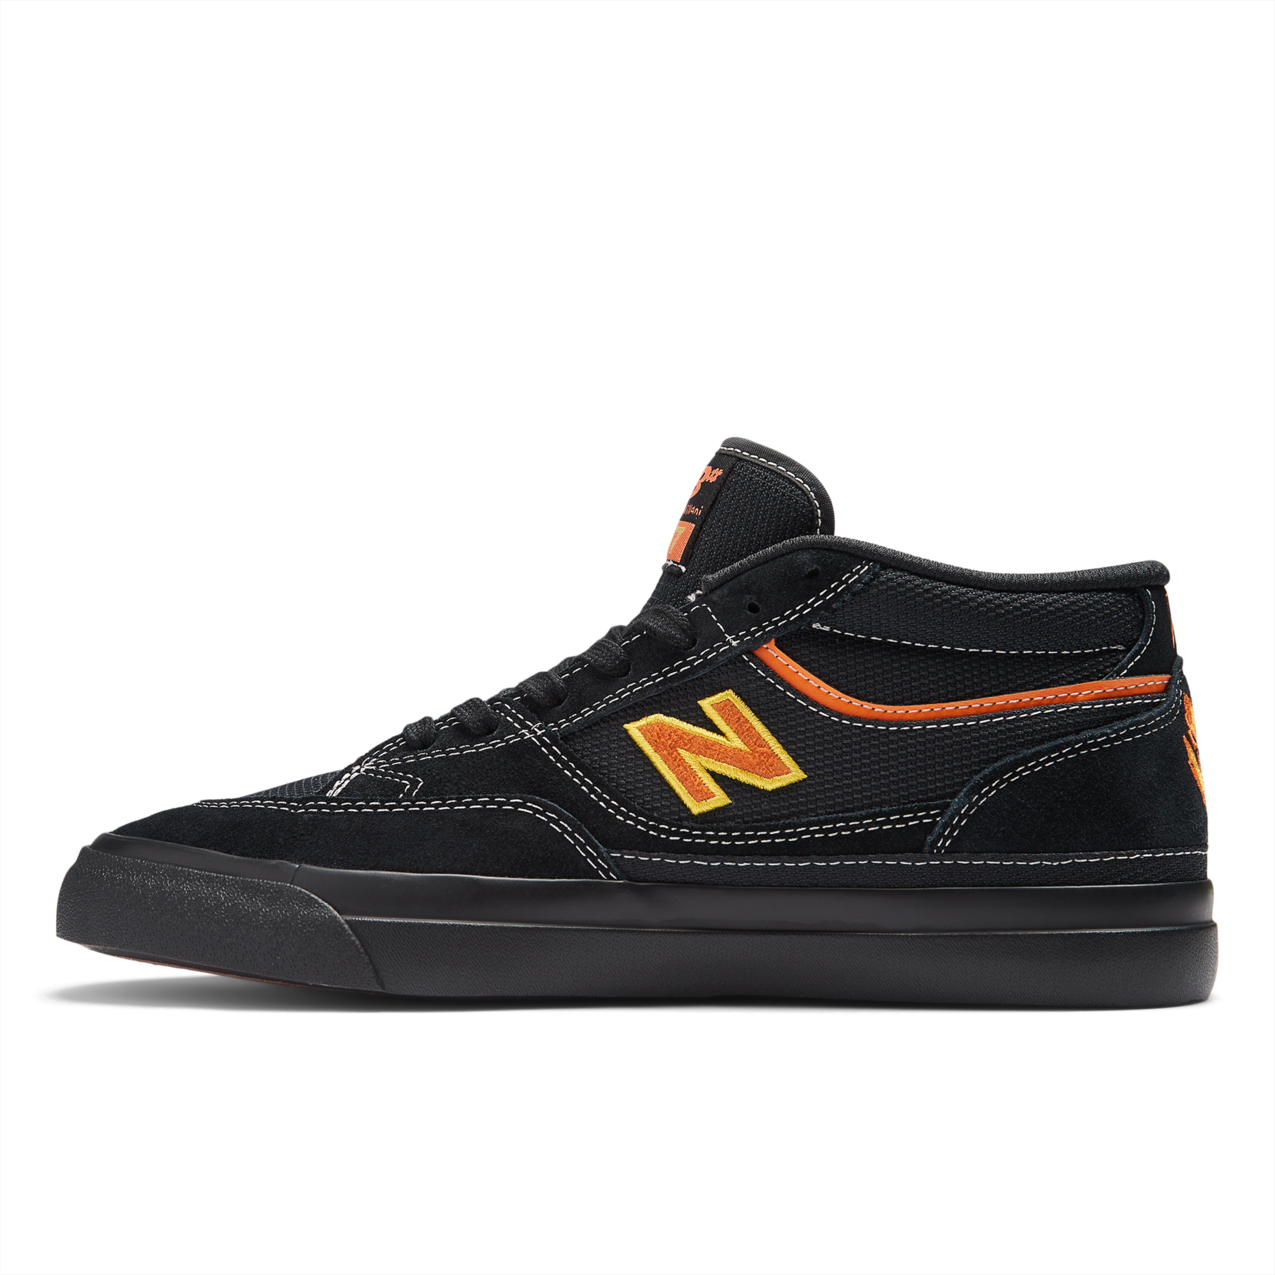 New Balance Numeric Men's Franky Villani 417 Black Orange Shoes